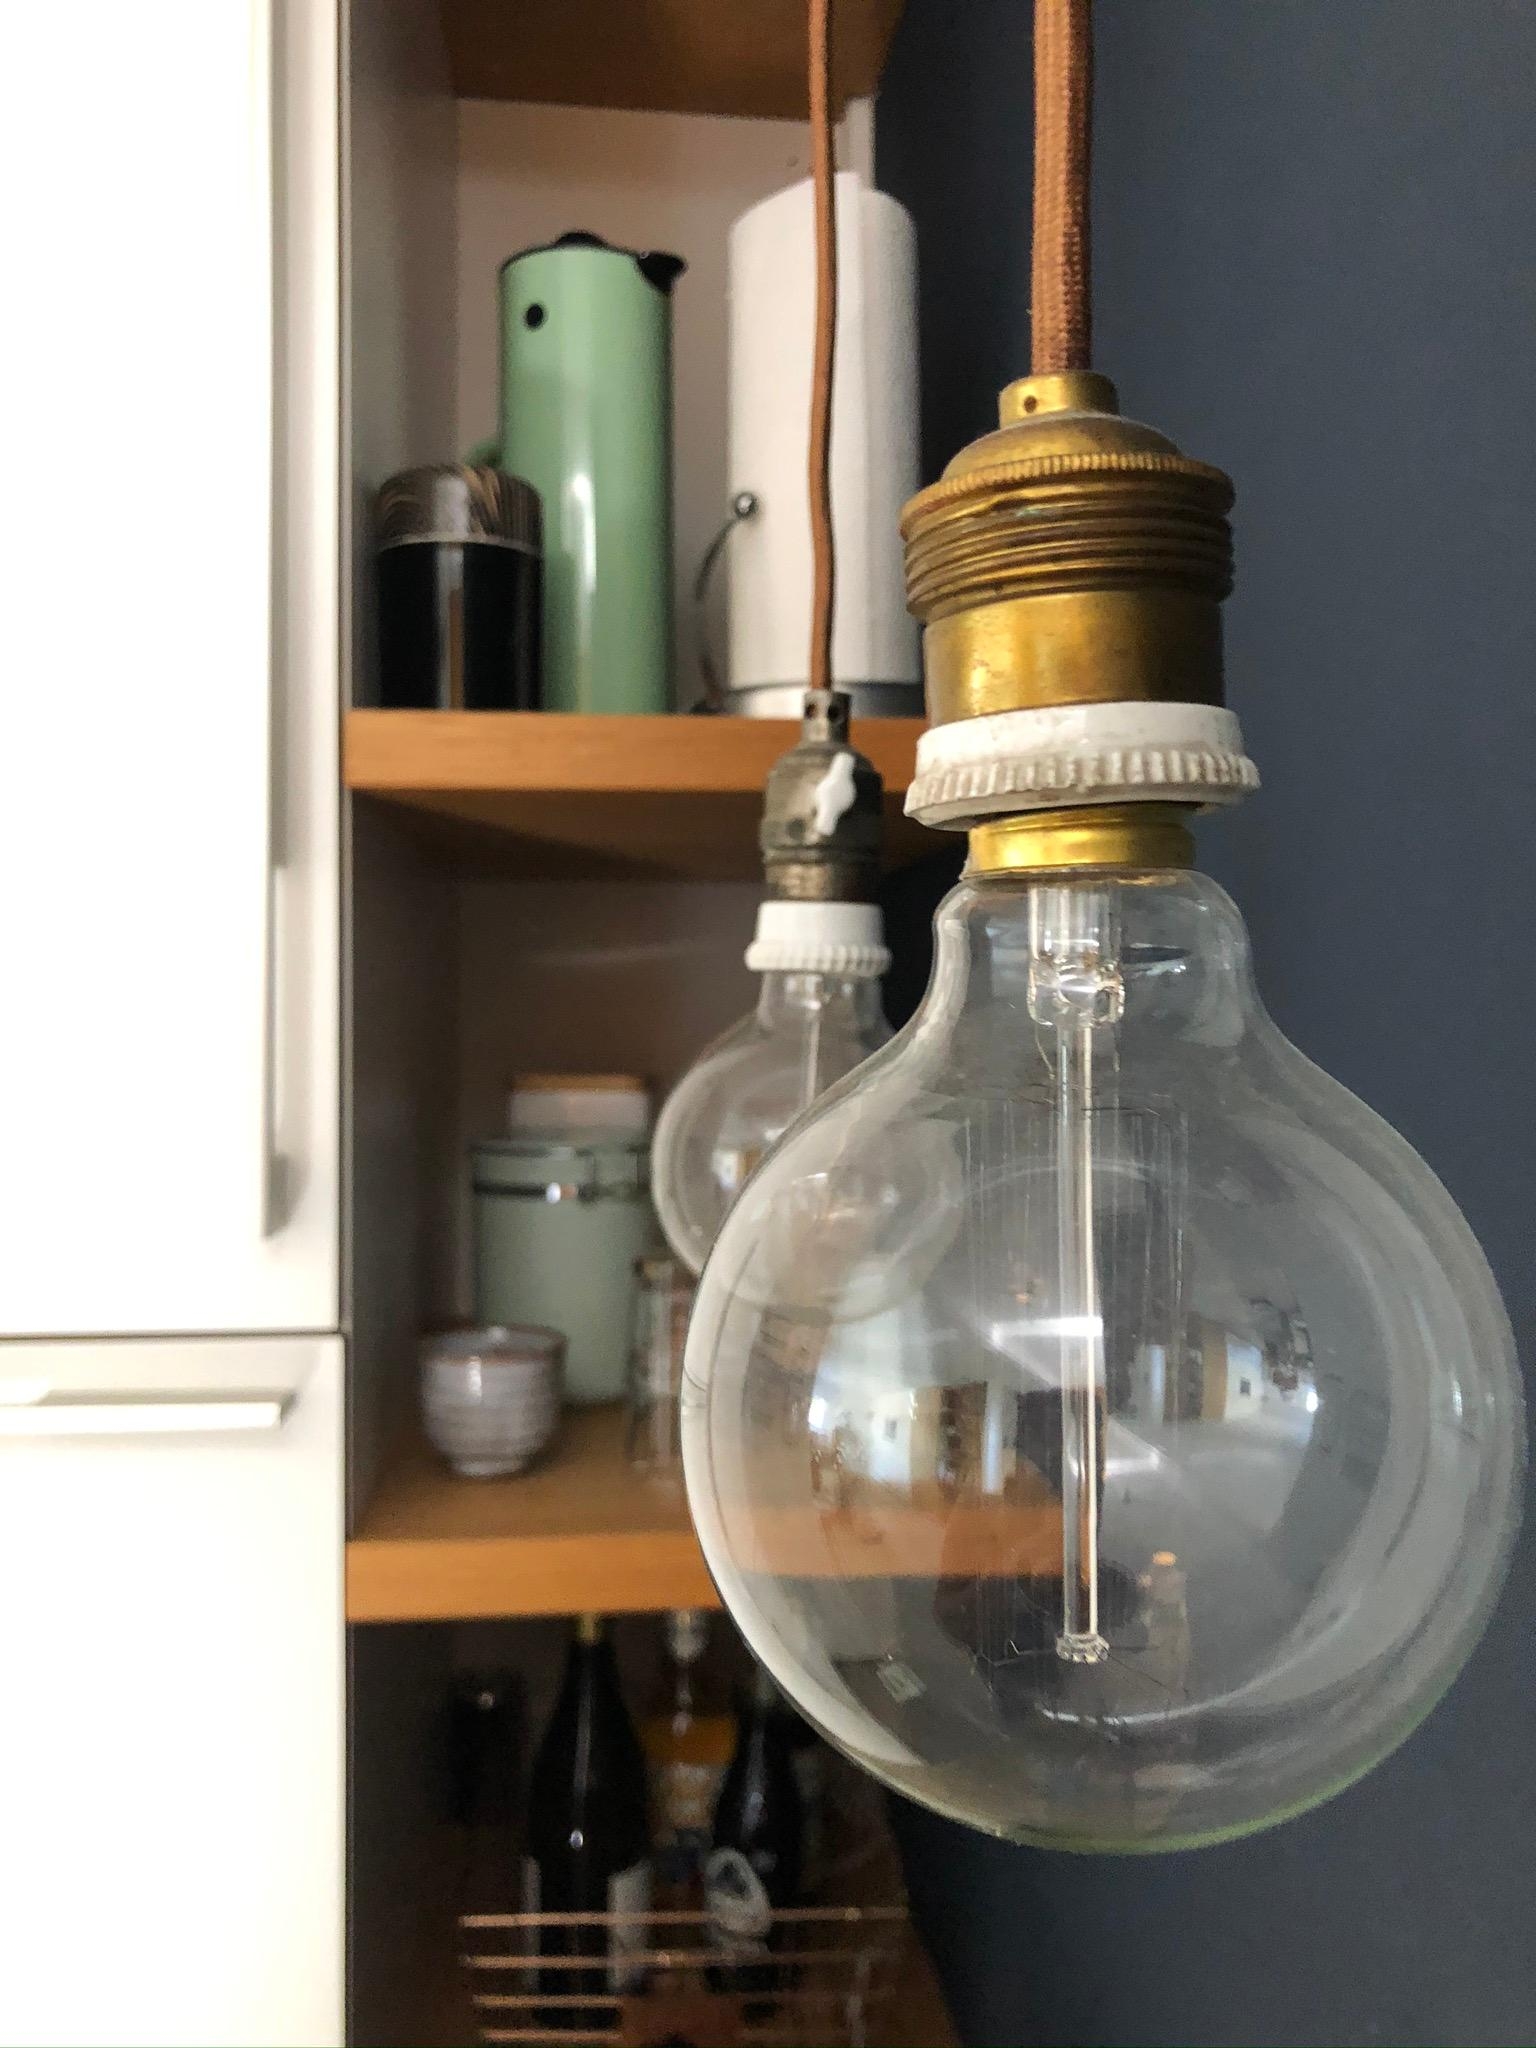 Unsere selbst zusammen gebastelten Vintagelampen in der Küche! #DIY #vintage #lighting #kitchen 